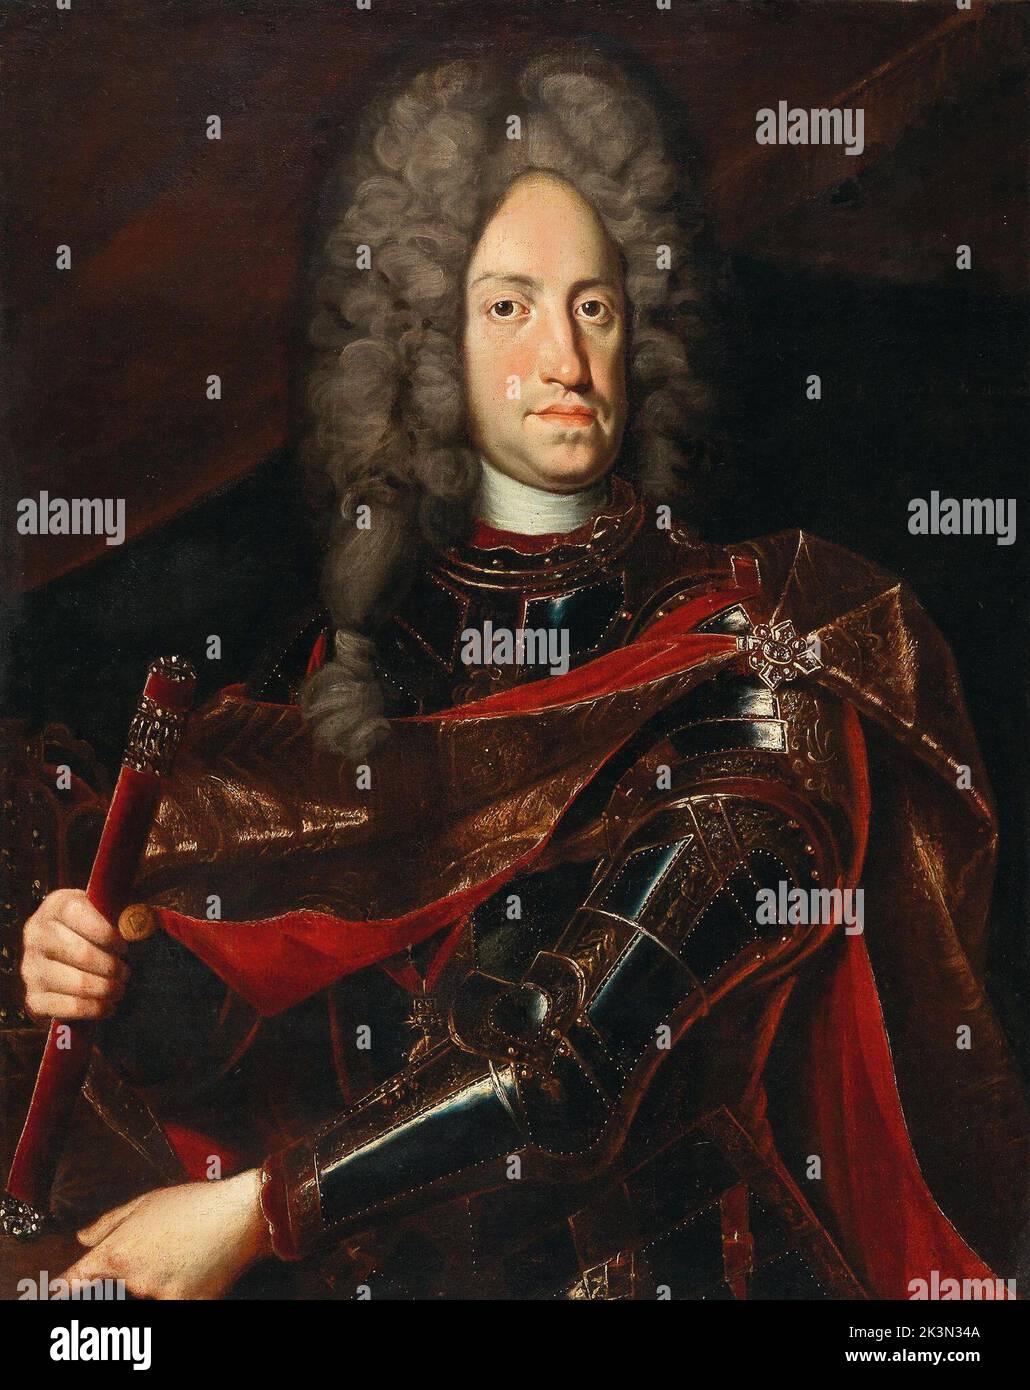 Porträt von Kaiser Karl VI. Karl VI. (1685 – 1740) Heiliger römischer Kaiser und Herrscher der österreichischen Habsburgermonarchie von 1711 bis 1740 Stockfoto